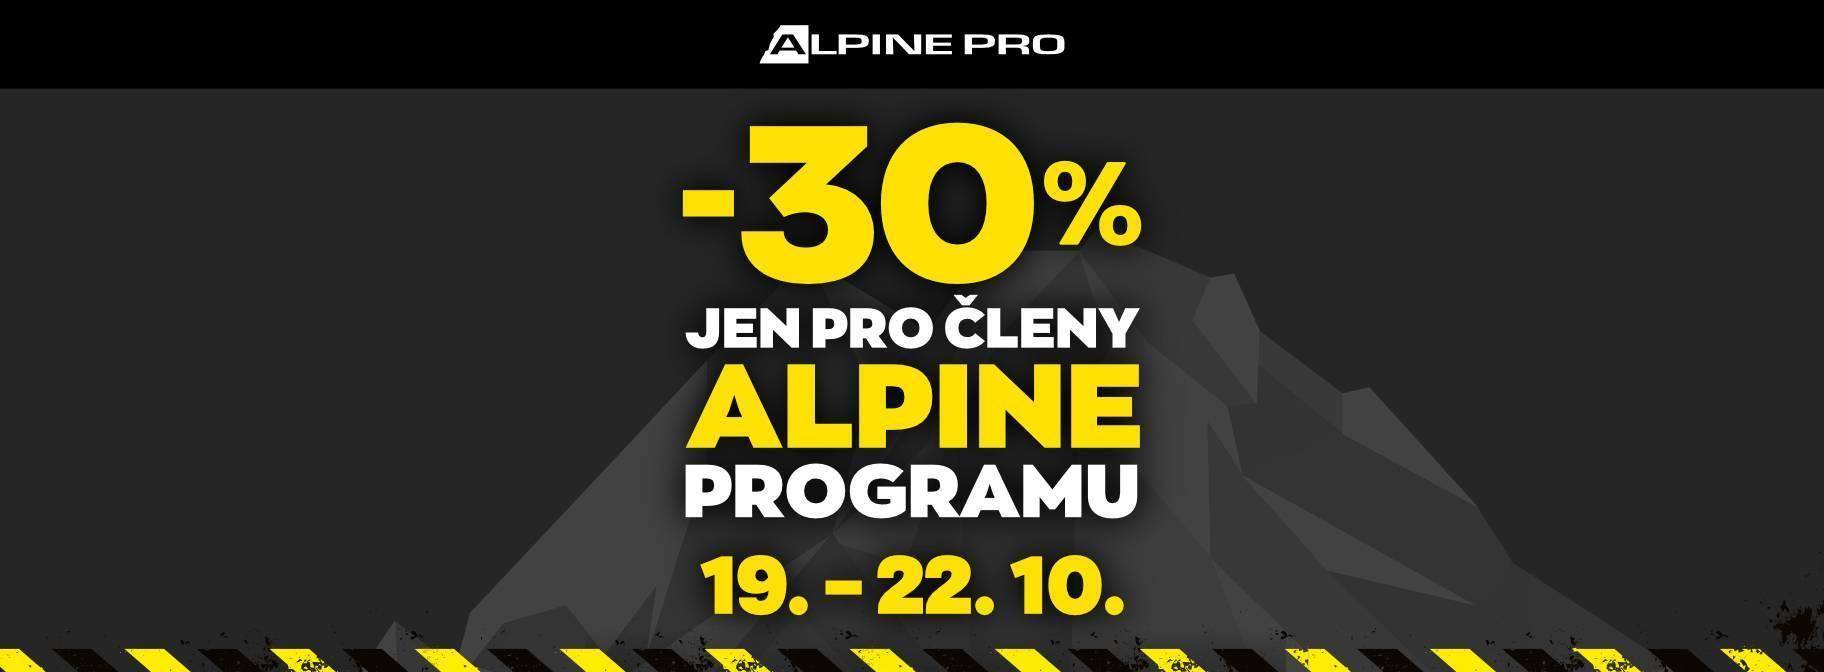 Sleva 30 % pro členy ALPINE PROgramu | Obchodní centrum Europark